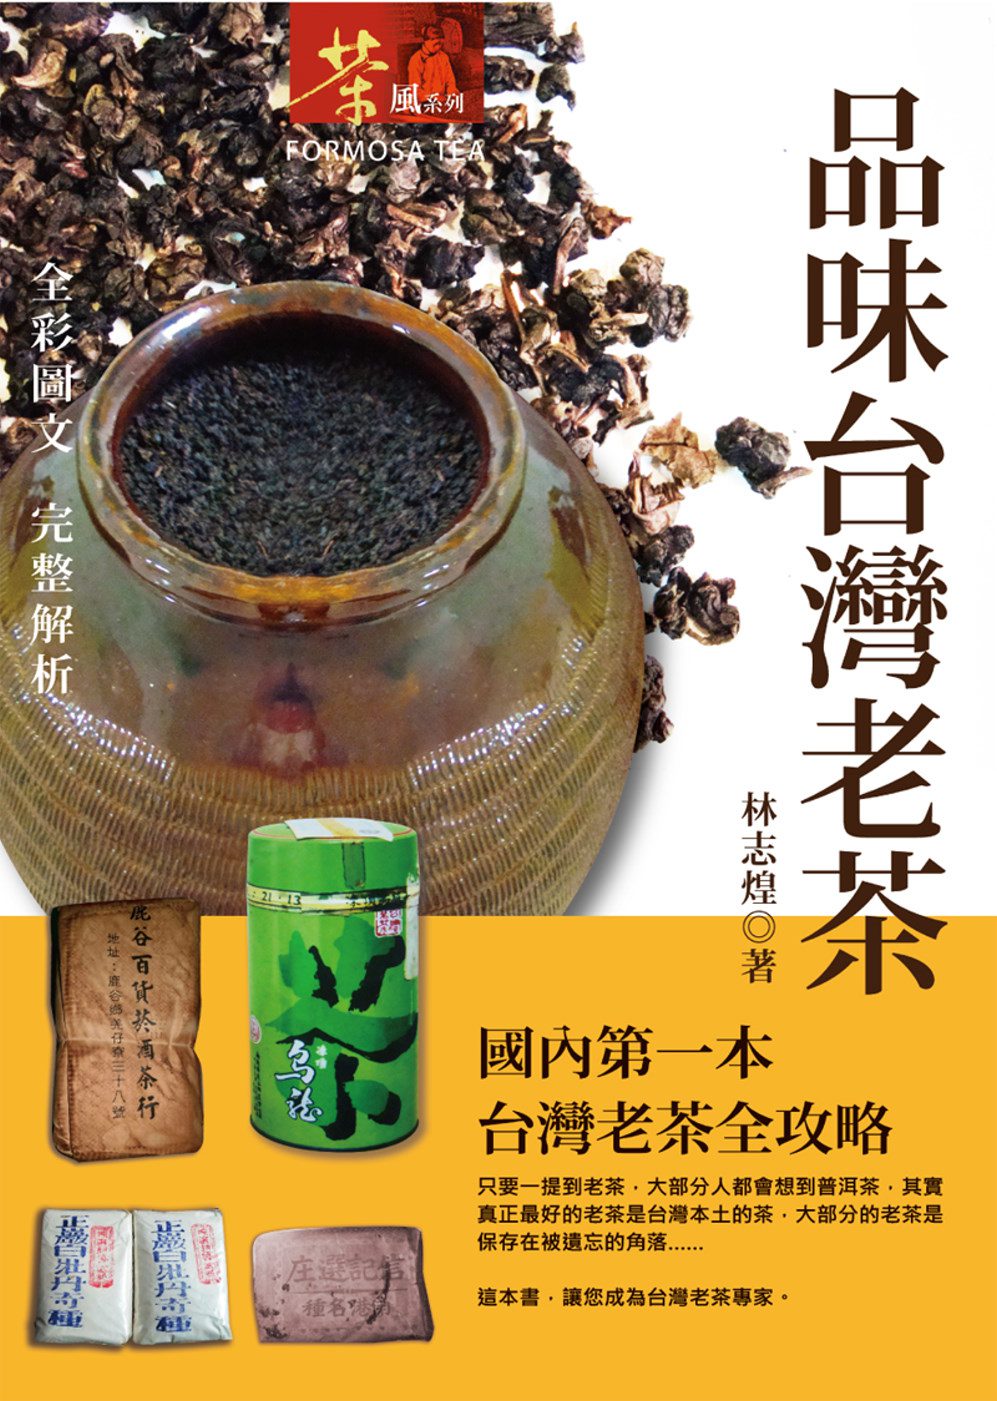 品味台灣老茶